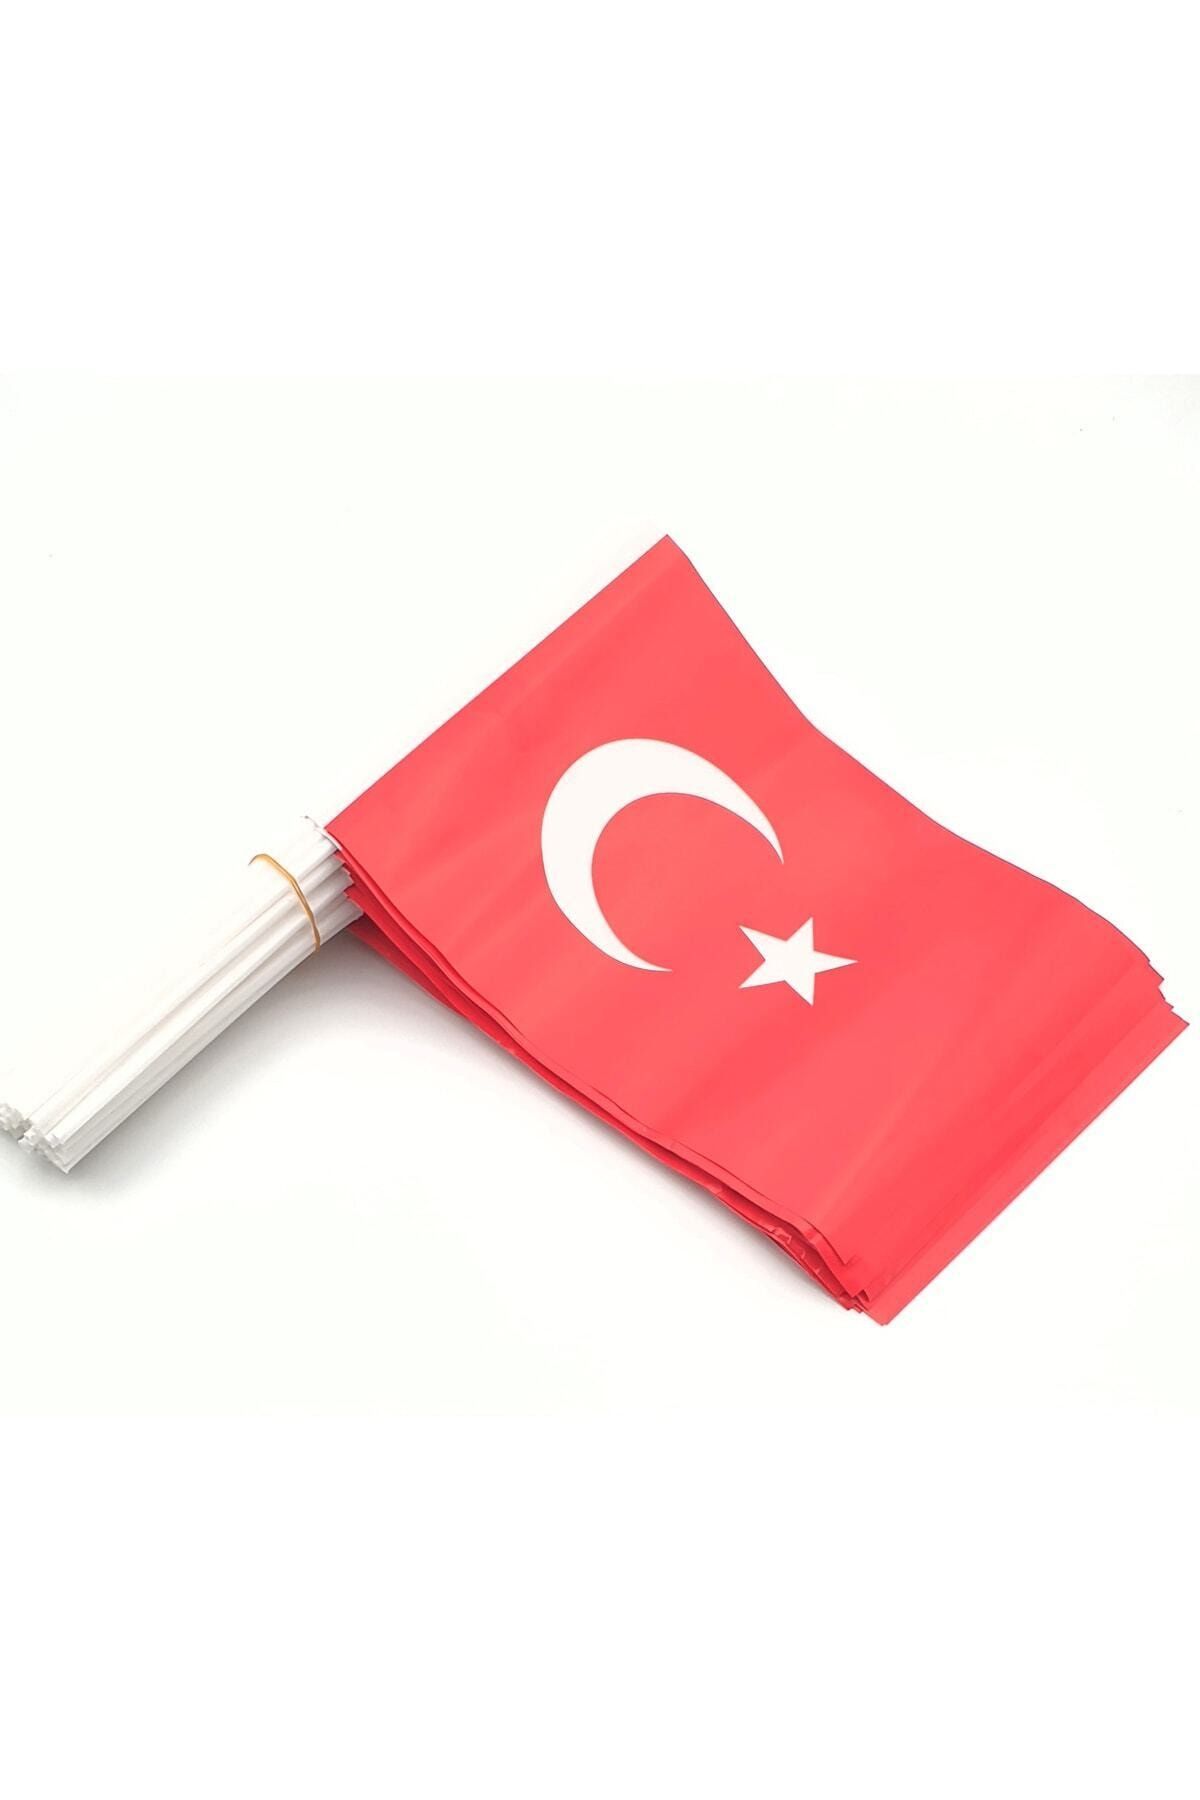 Happyland 100 Adet Çubuklu Kağıt Türk Bayrağı Çıtalı Sopalı Ayyıldız Baskılı Bayrak